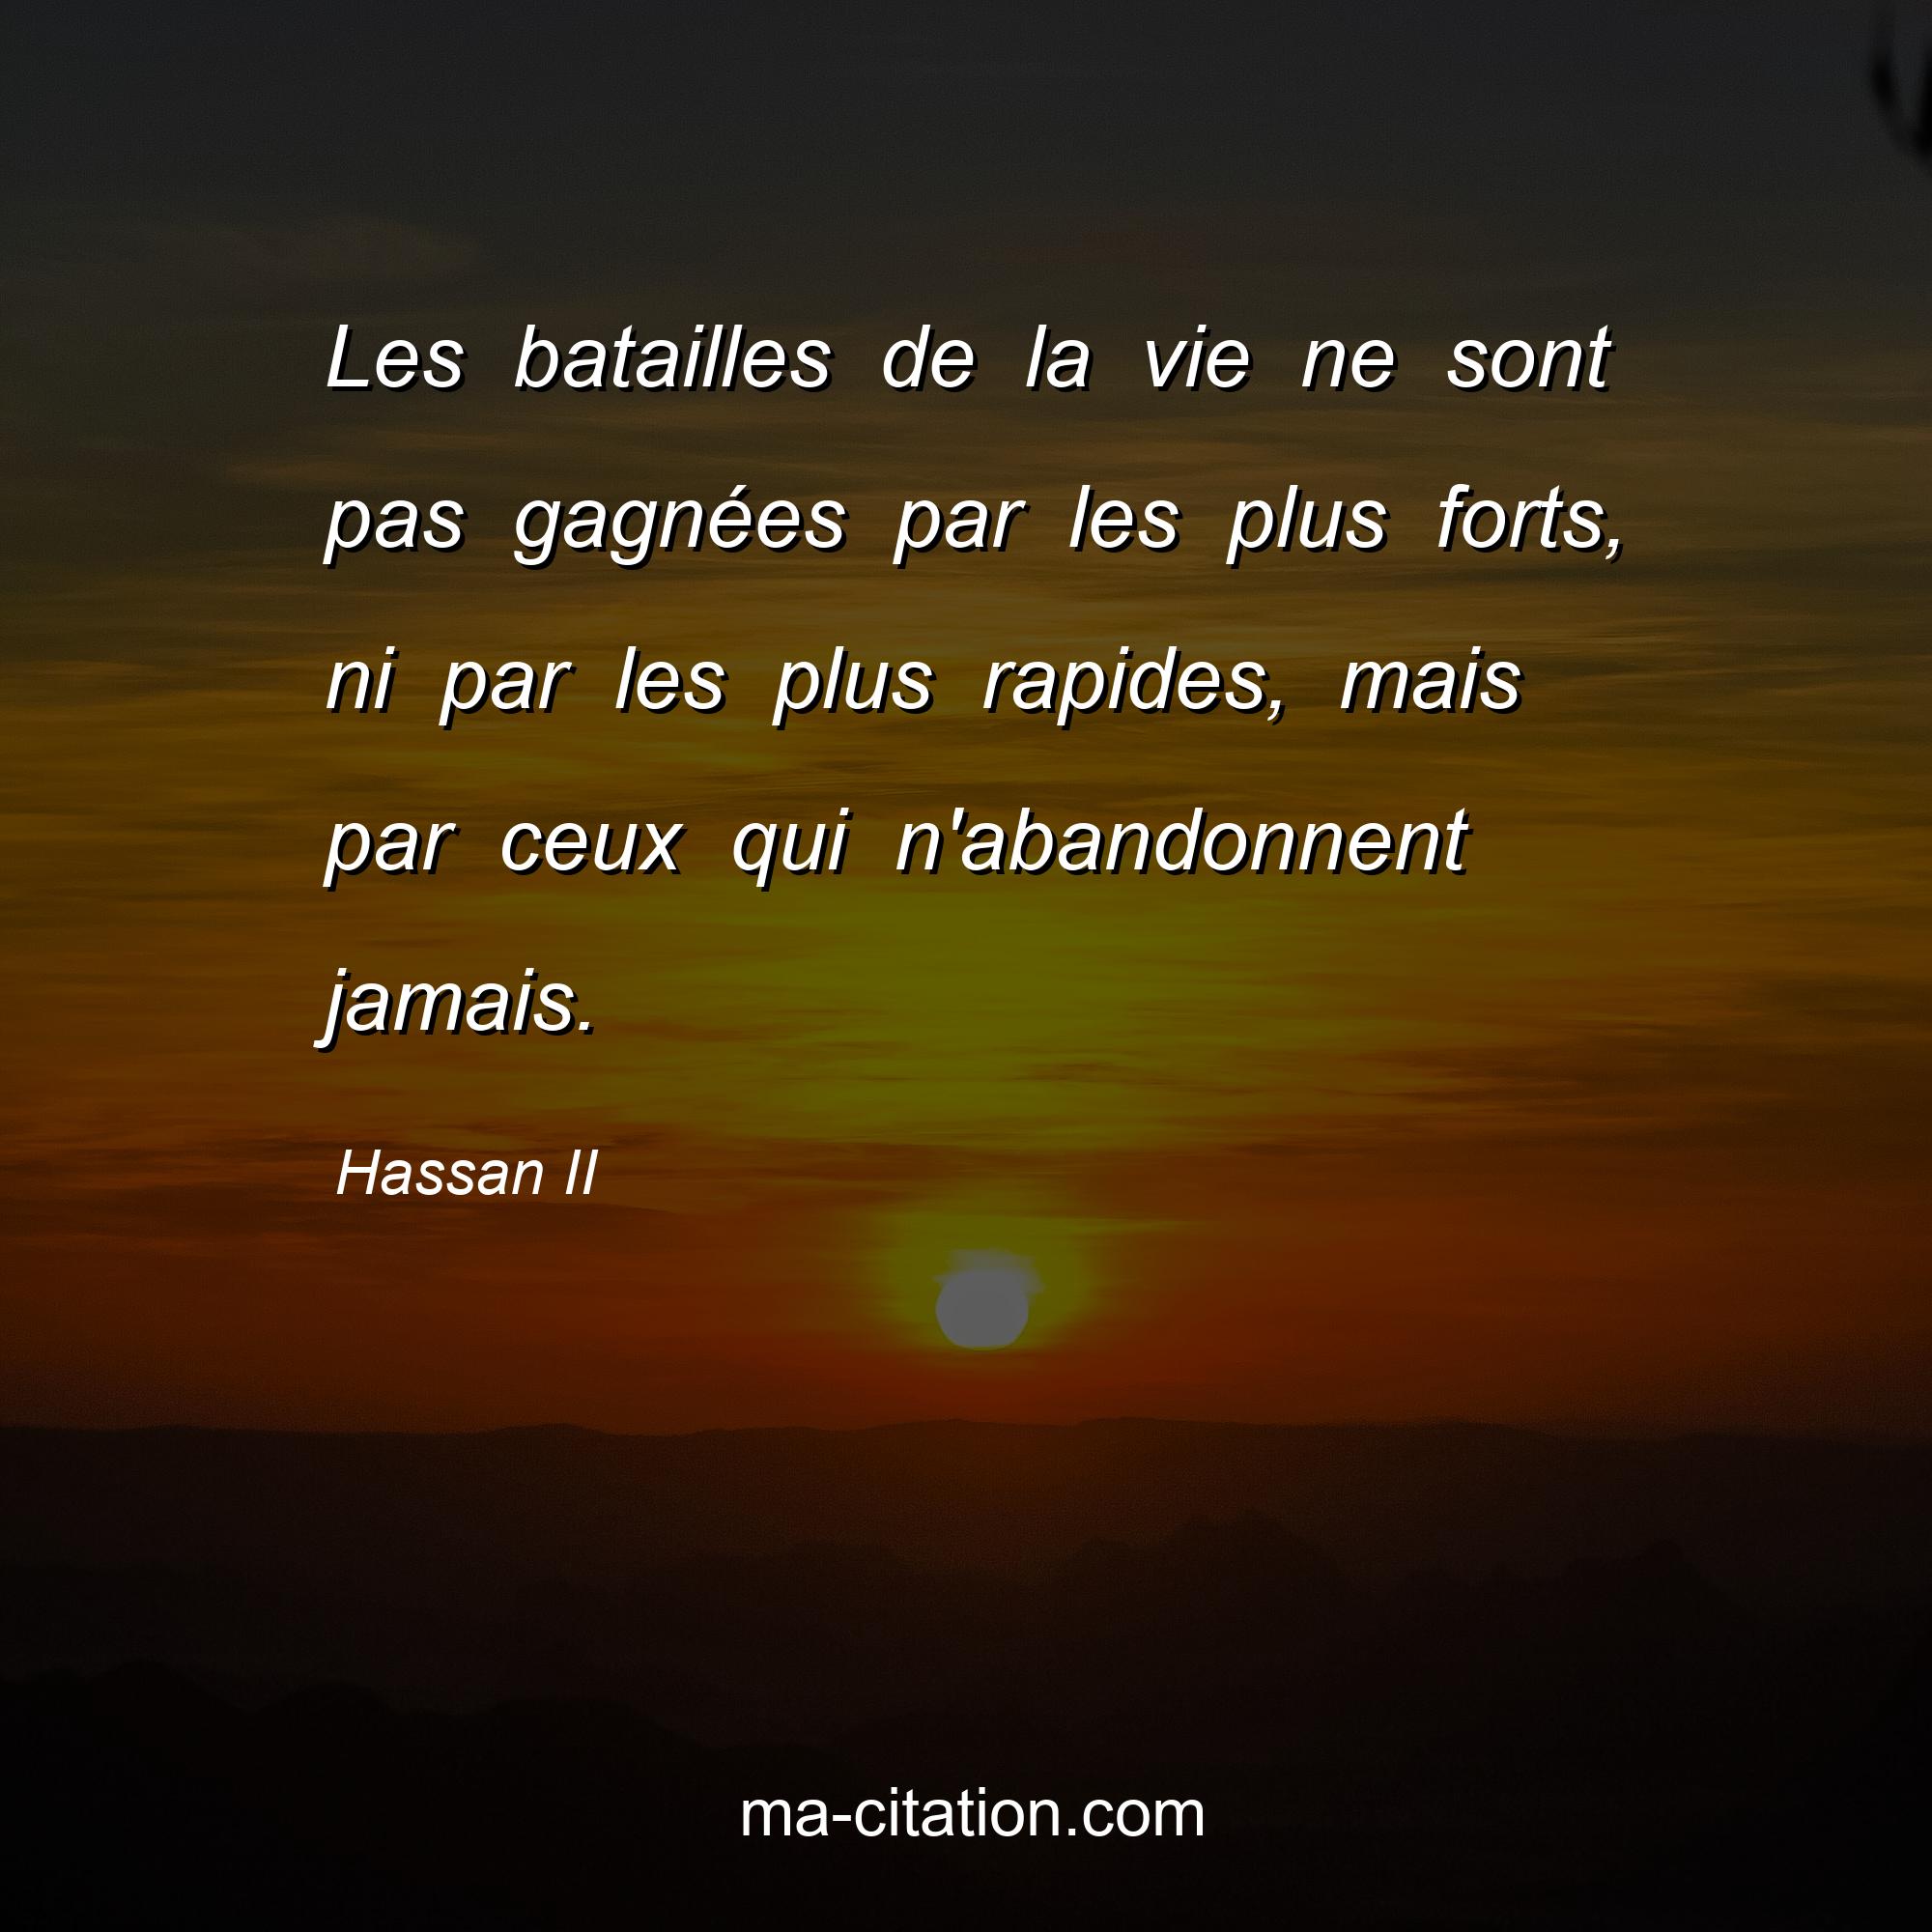 Hassan II : Les batailles de la vie ne sont pas gagnées par les plus forts, ni par les plus rapides, mais par ceux qui n'abandonnent jamais.